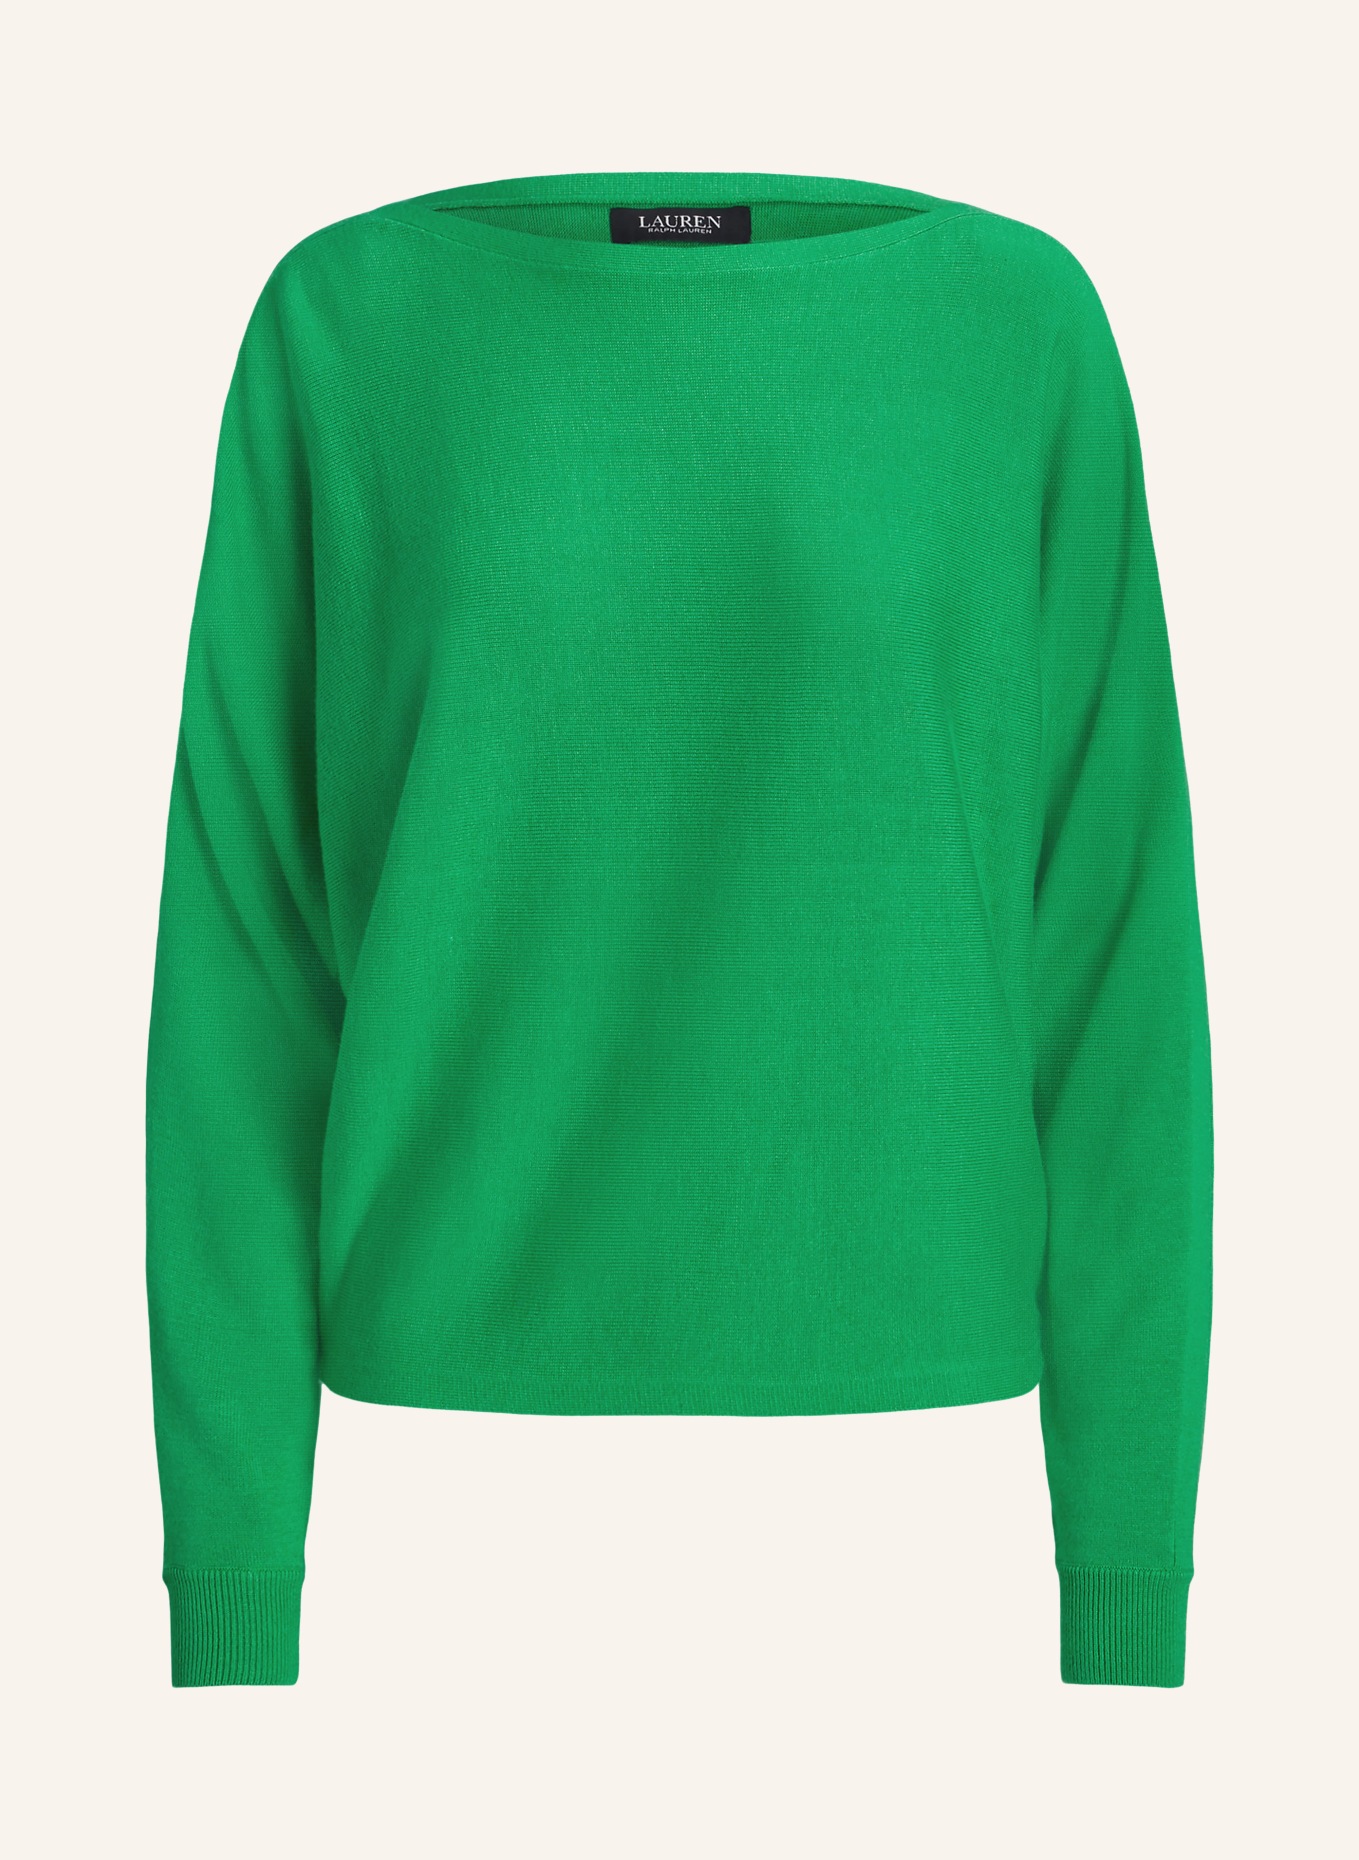 LAUREN RALPH LAUREN Sweater, Color: GREEN (Image 1)